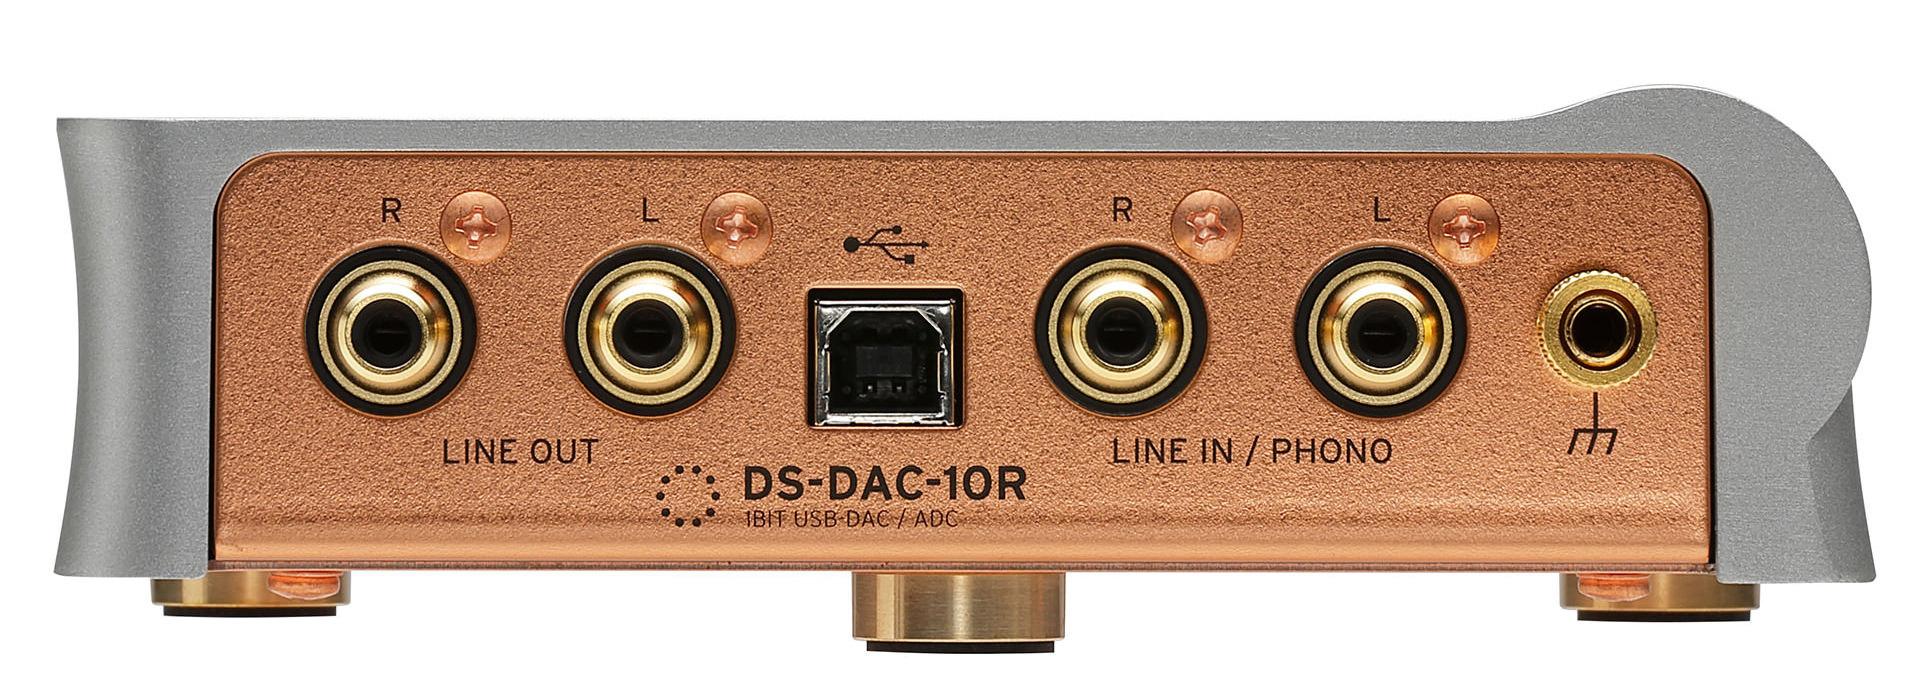 DS-DAC-10R背面画像